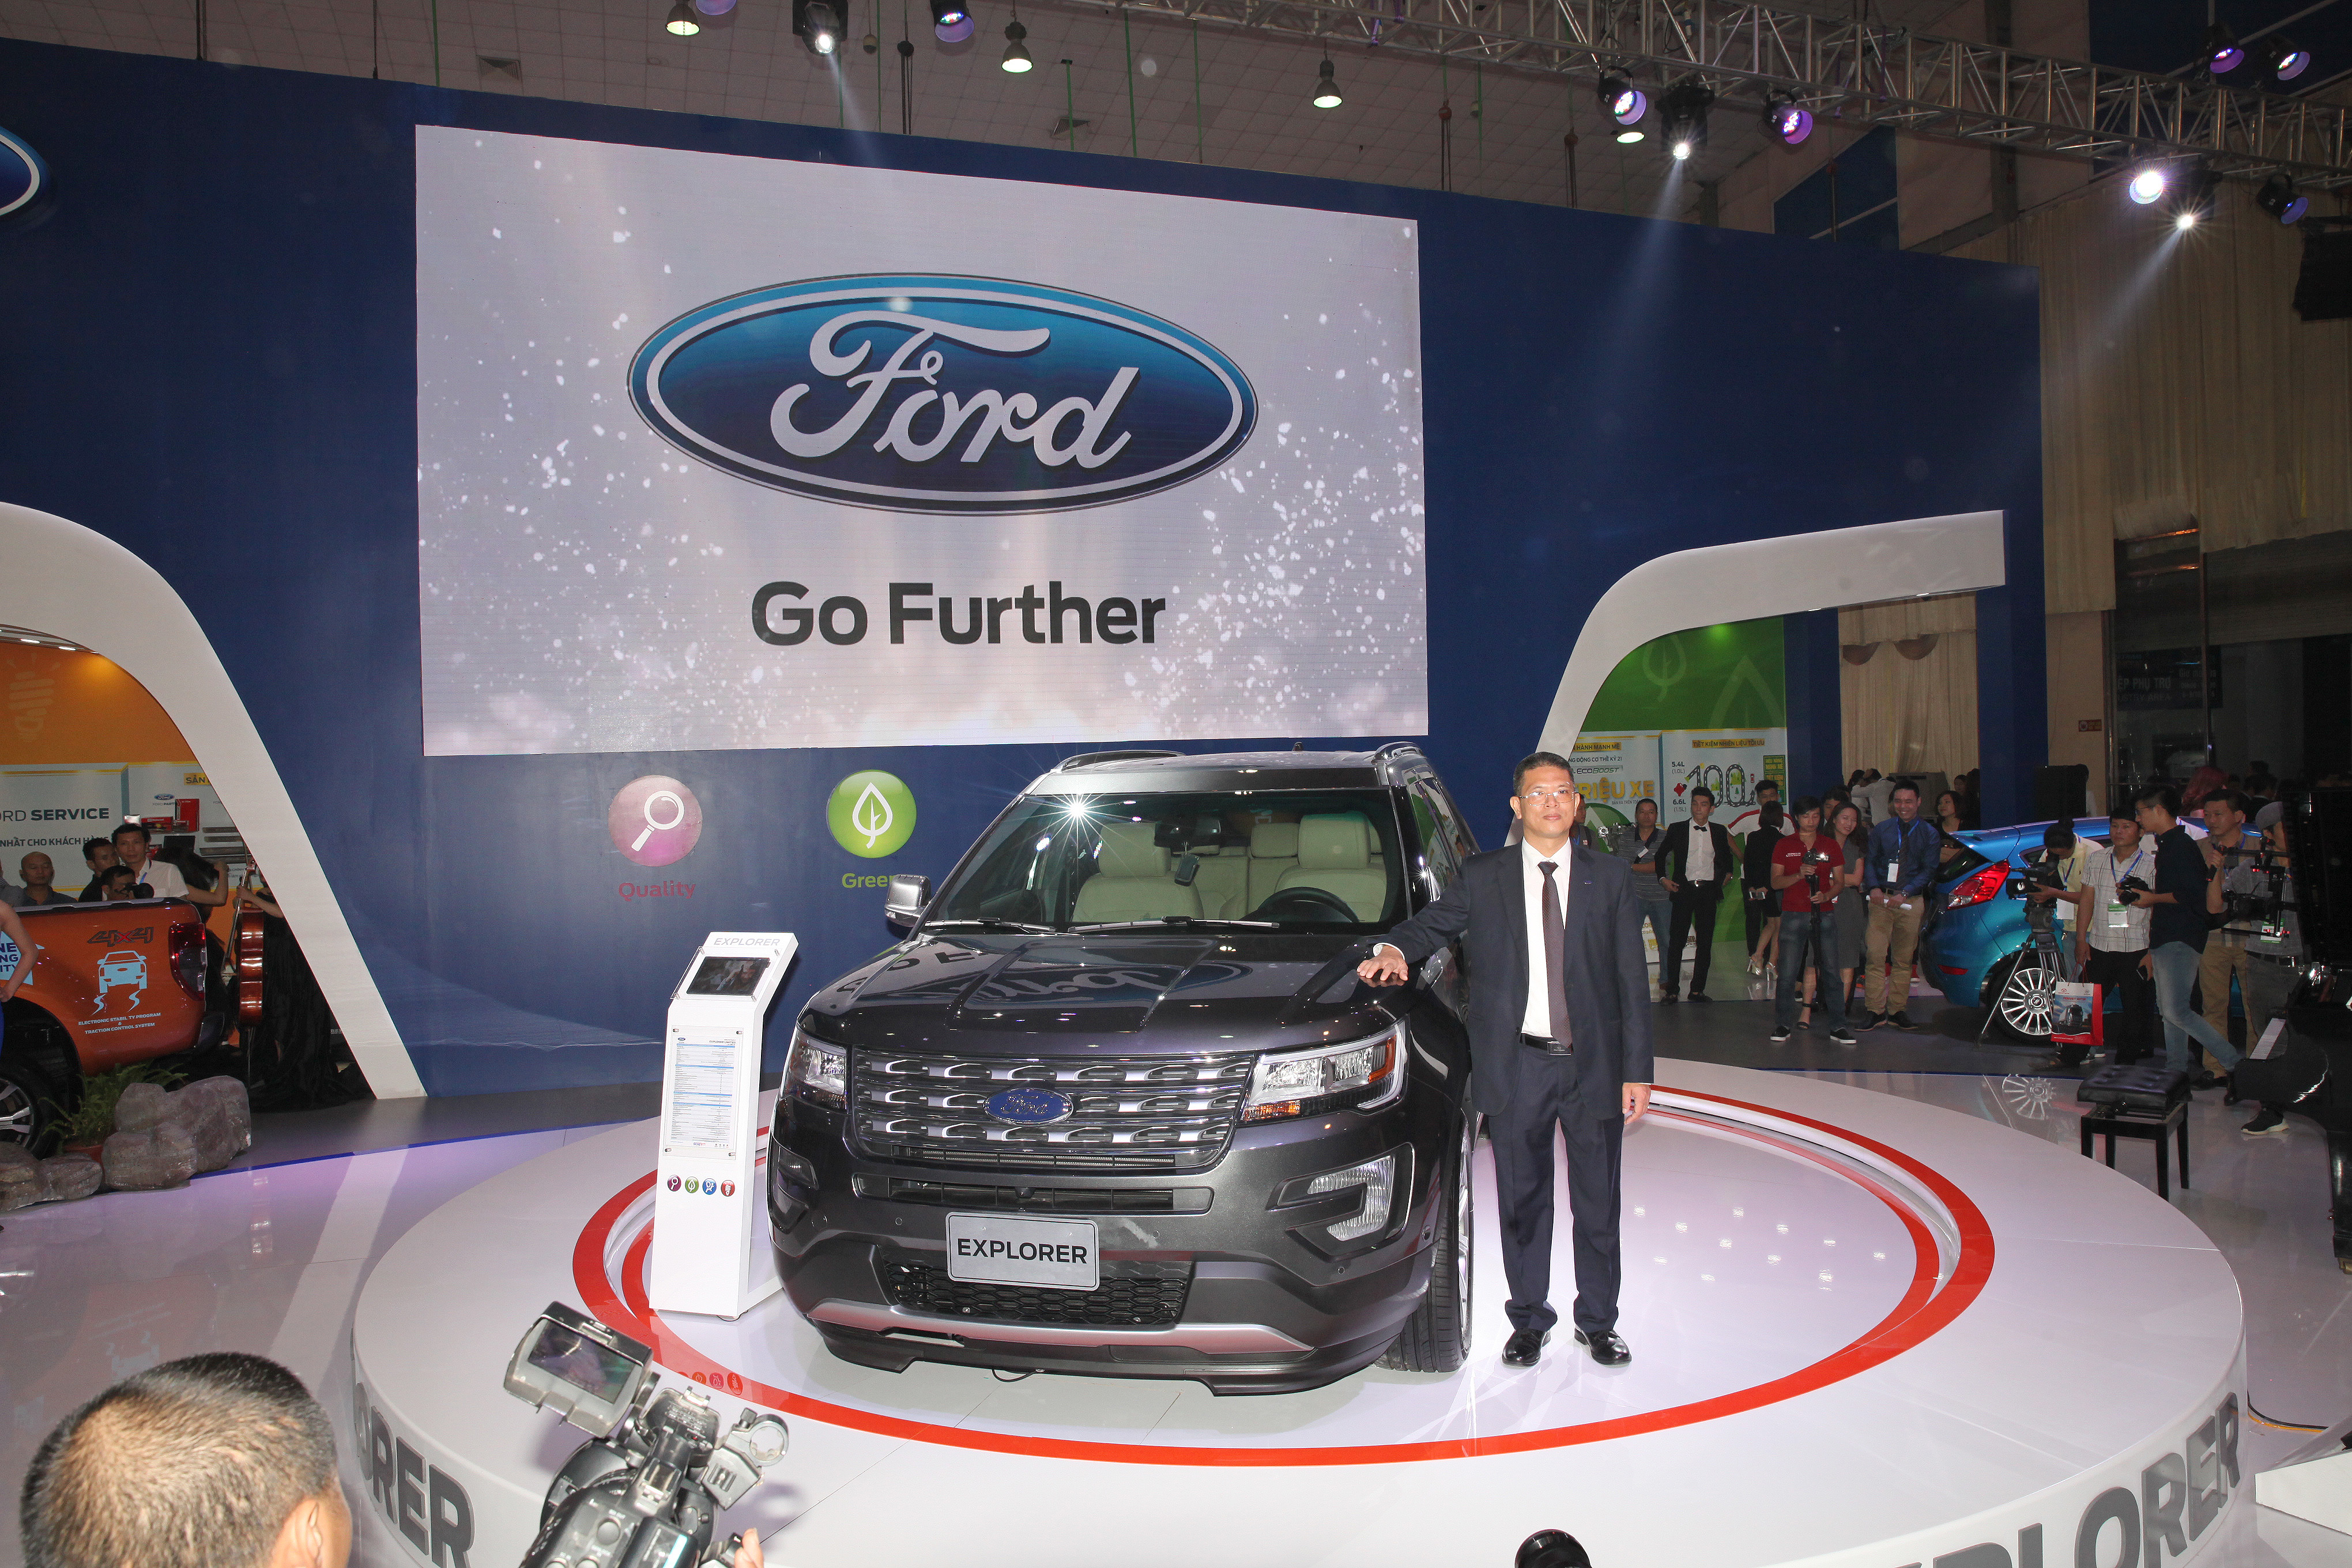  Ford ra mắt người tiêu dùng Việt Nam mẫu SUV hạng sang Ford Explorer hoàn toàn mới. Ảnh: Chí Cường